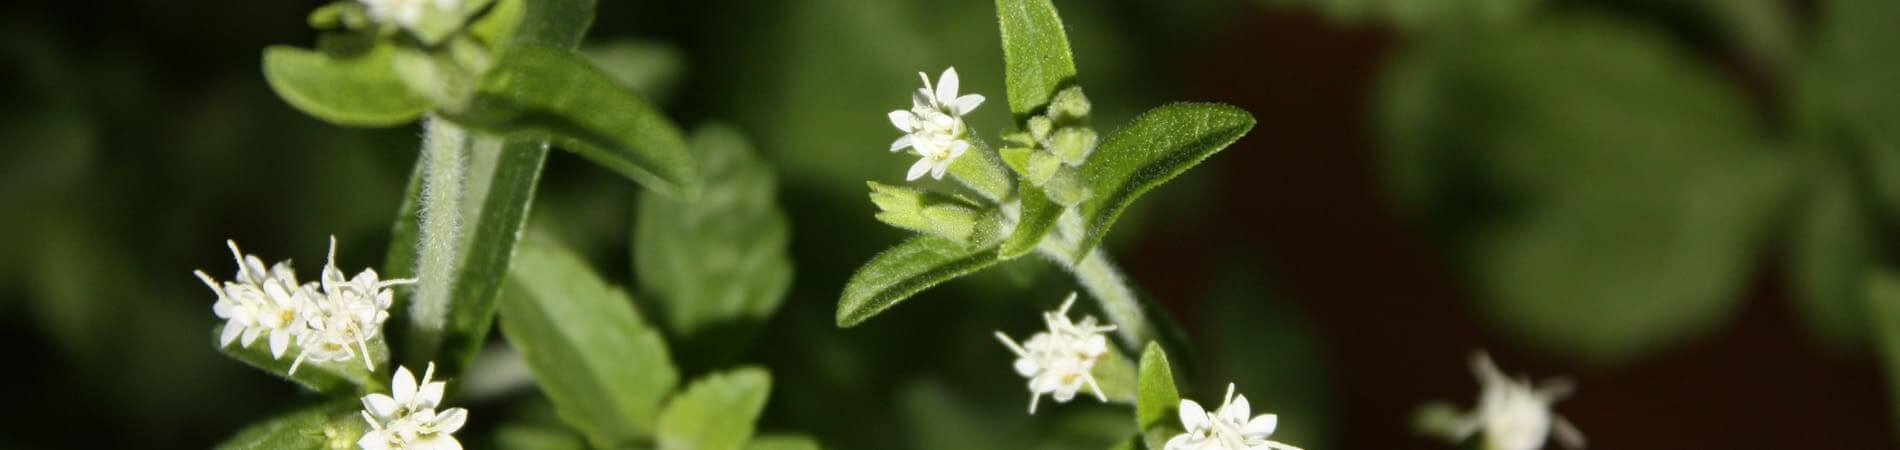 O que é Stevia - Flor da planta Stevia - Informações...